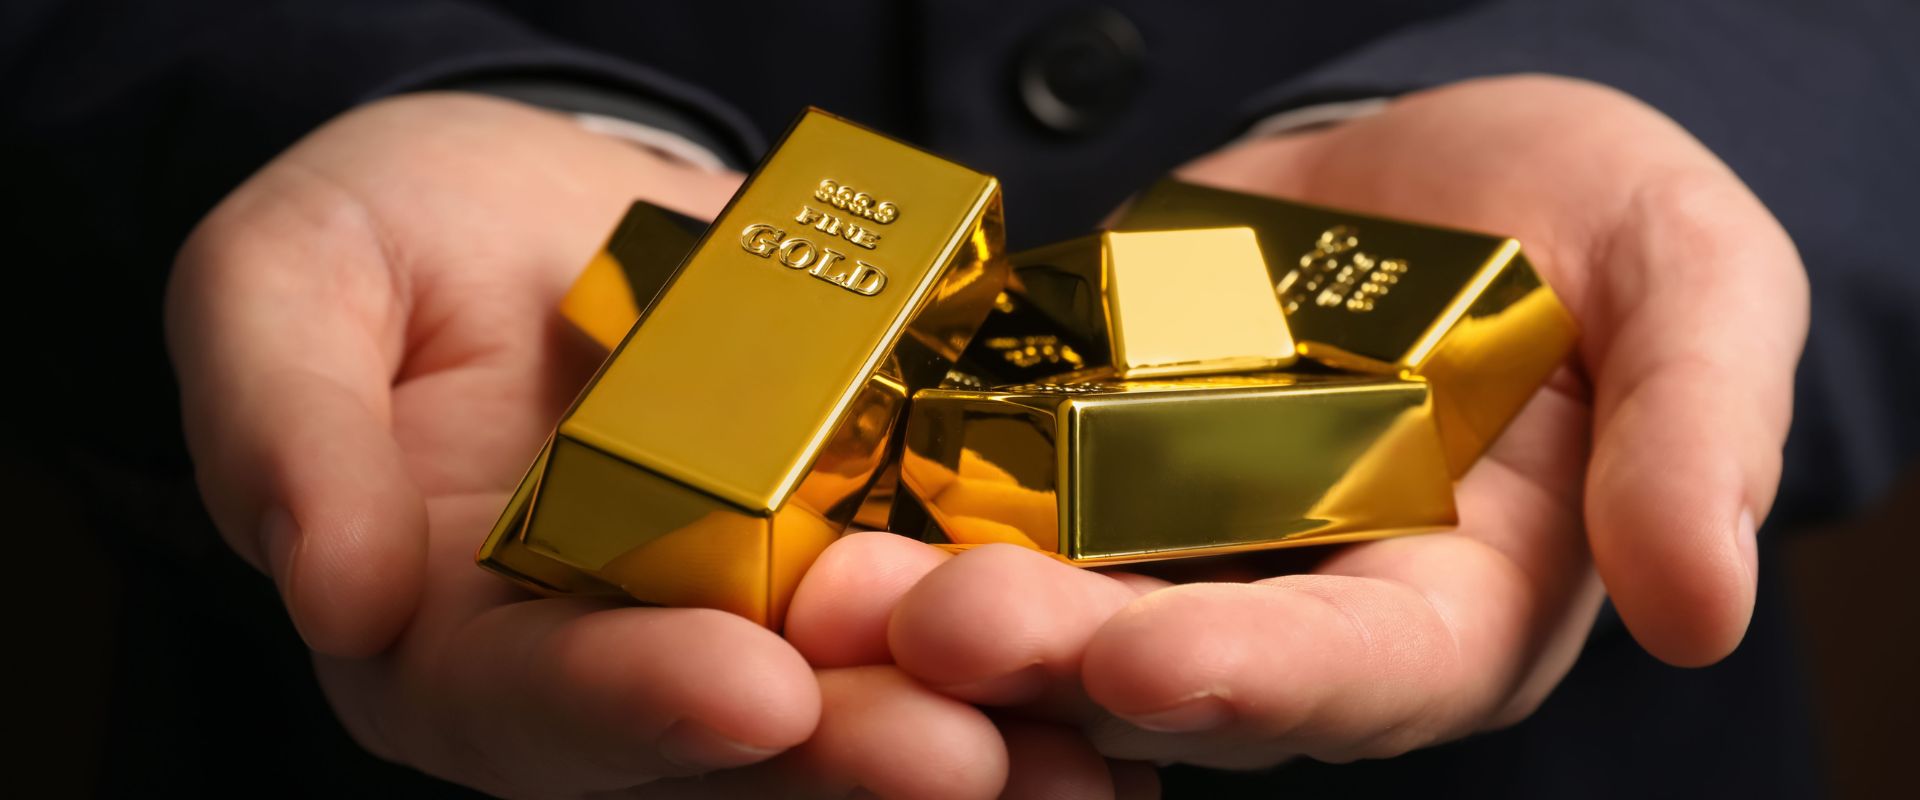 man holding many shiny gold bars